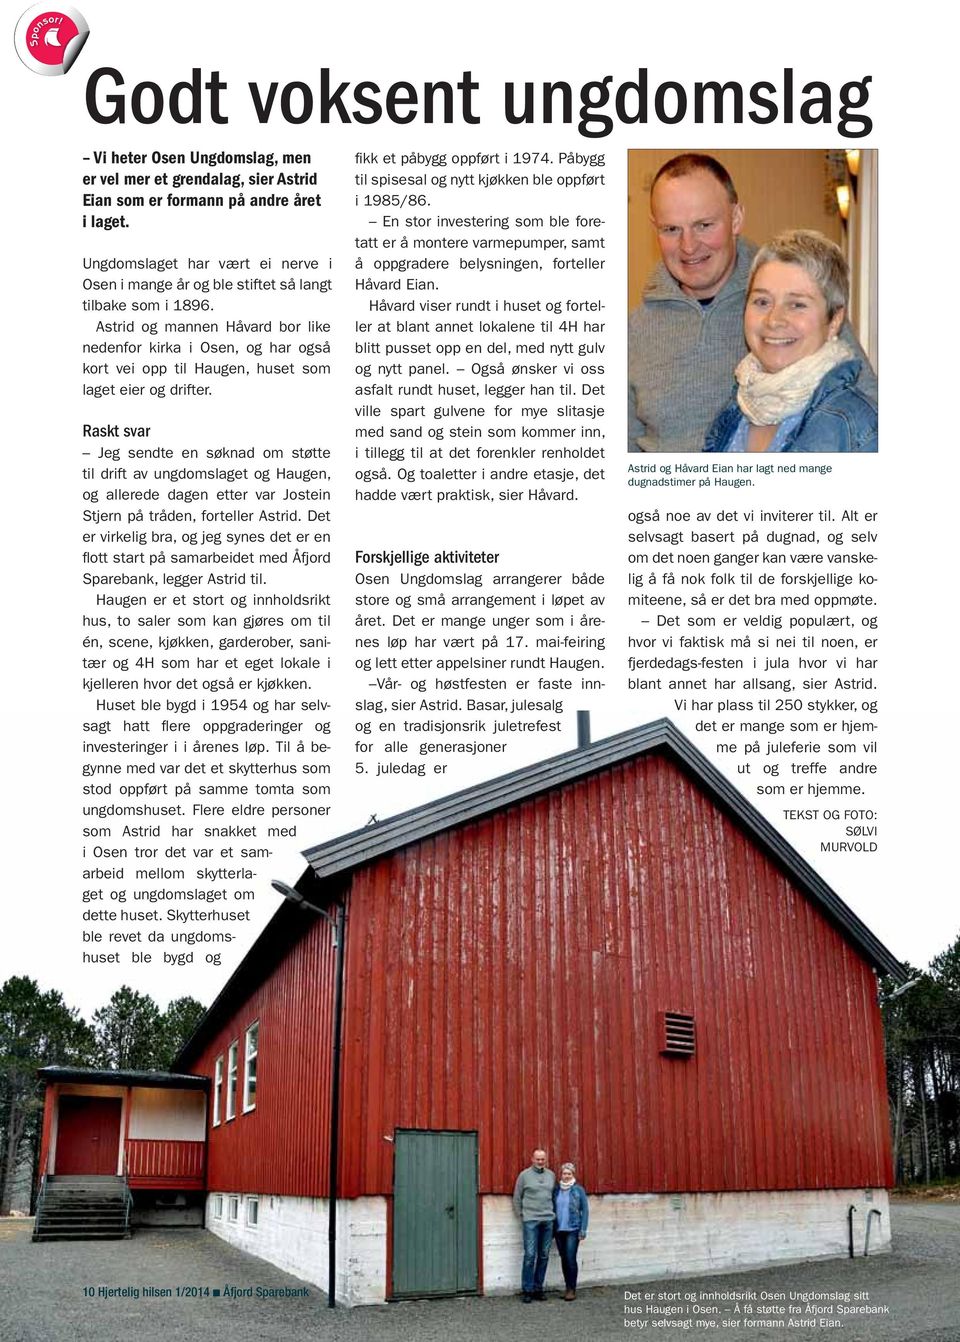 Astrid og mannen Håvard bor like nedenfor kirka i Osen, og har også kort vei opp til Haugen, huset som laget eier og drifter.